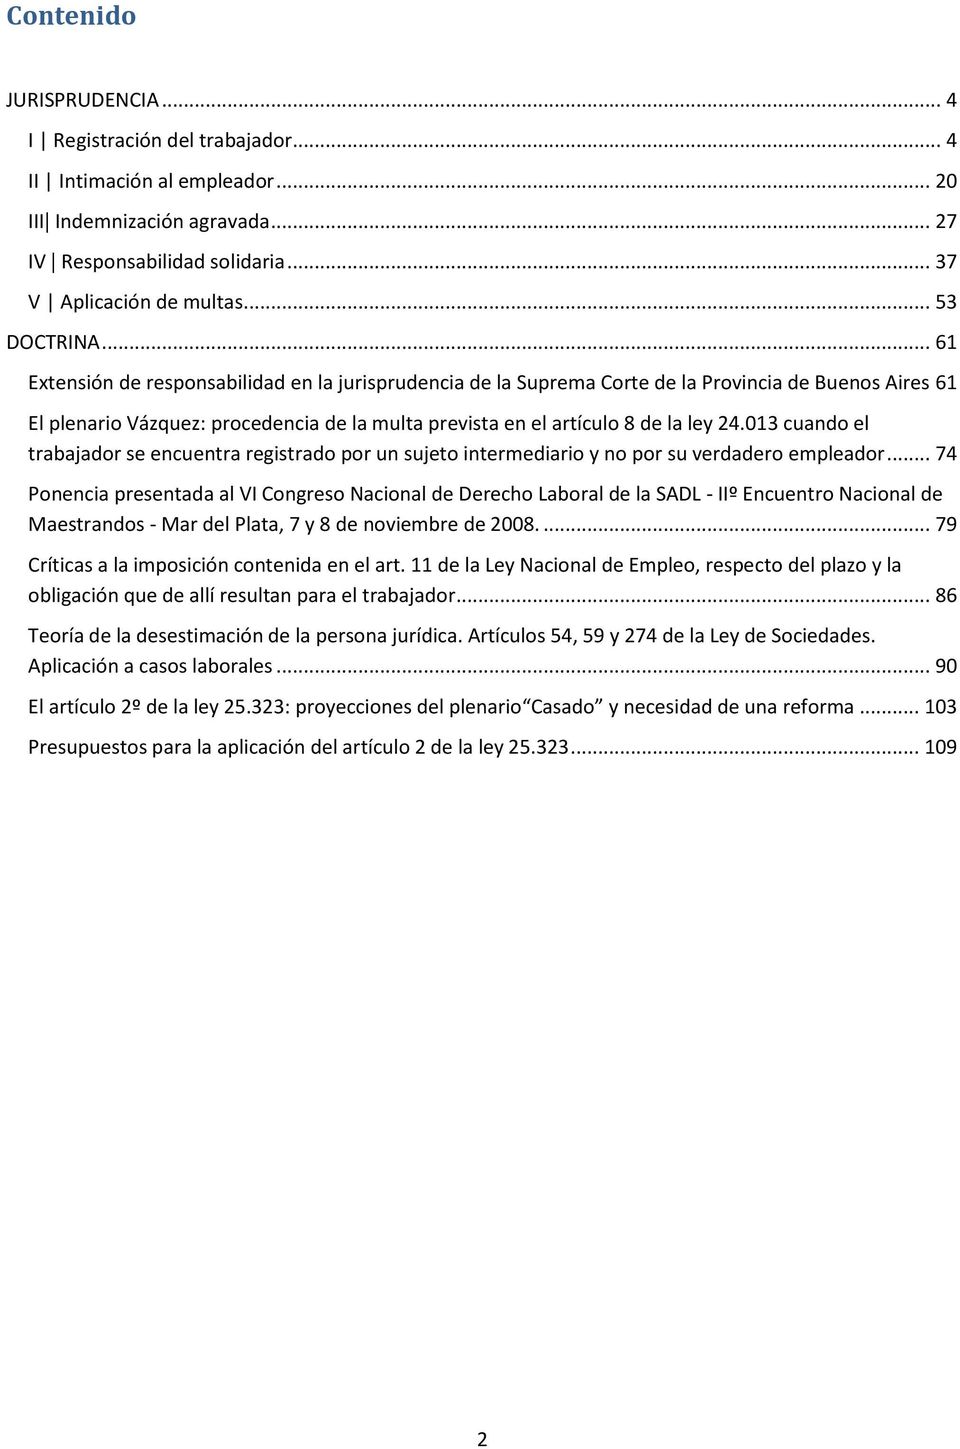 .. 61 Extensión de responsabilidad en la jurisprudencia de la Suprema Corte de la Provincia de Buenos Aires 61 El plenario Vázquez: procedencia de la multa prevista en el artículo 8 de la ley 24.